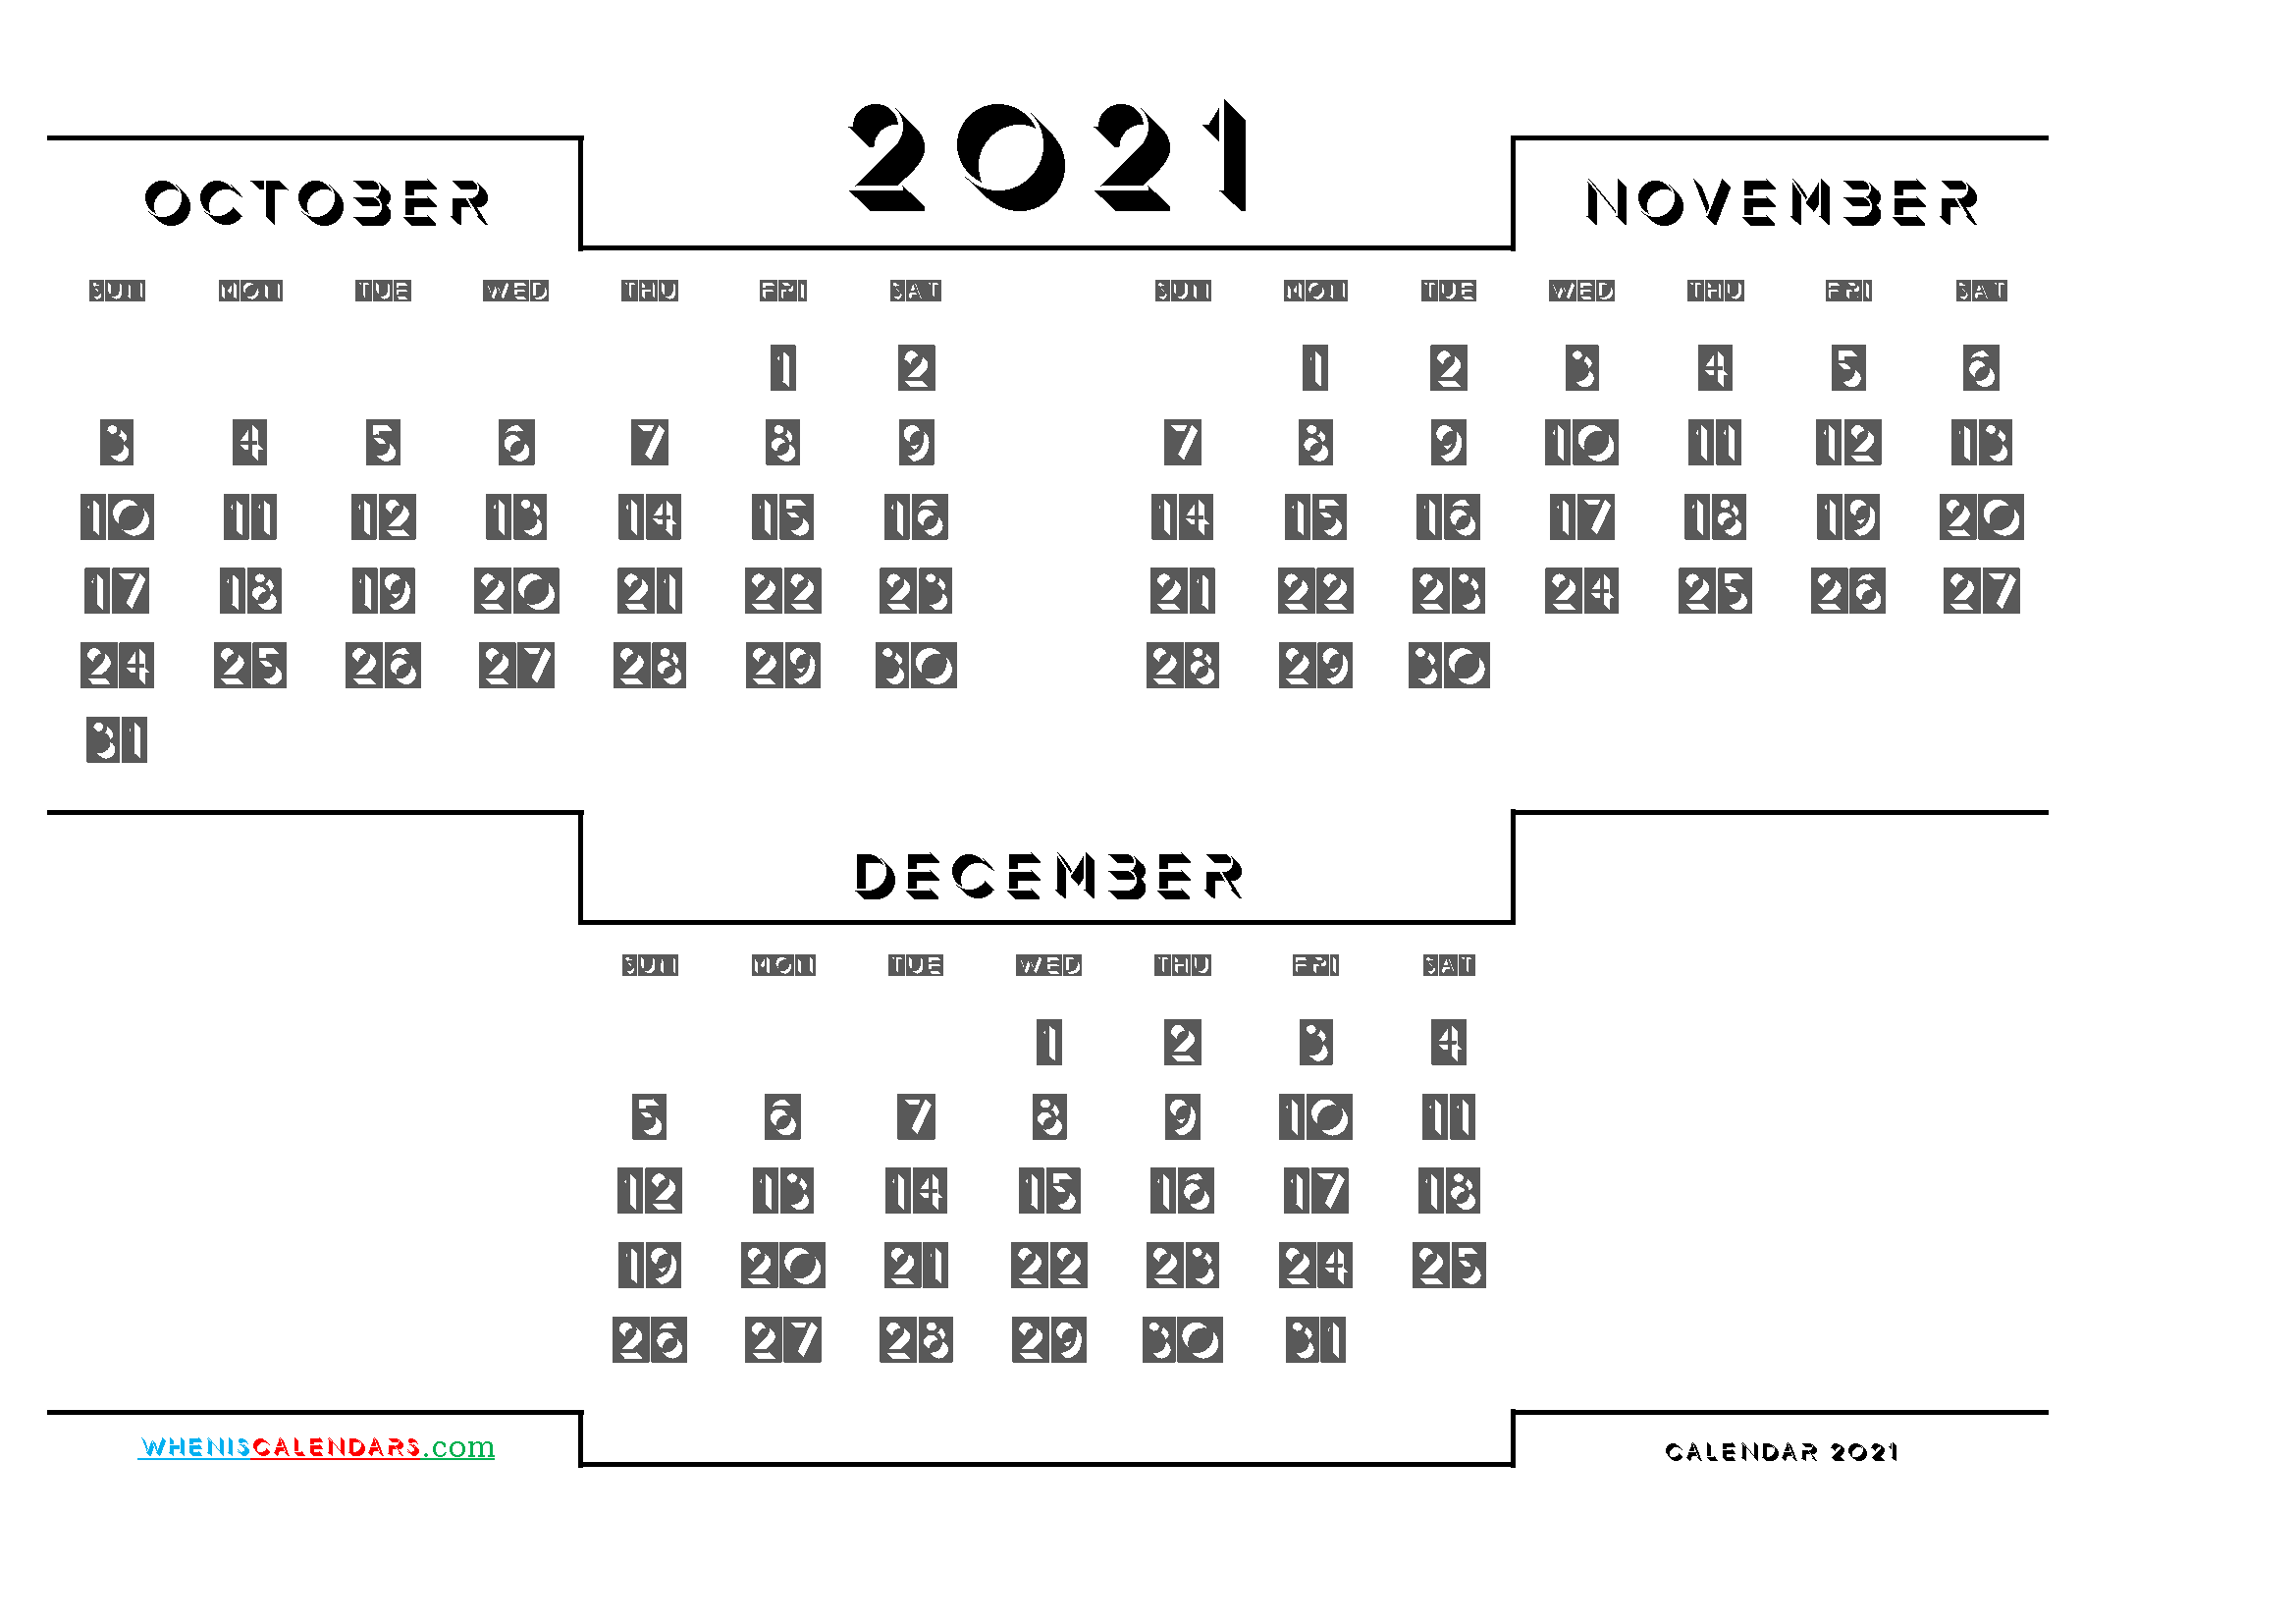 October November December 2021 Calendar printable 3 month calendar on one page